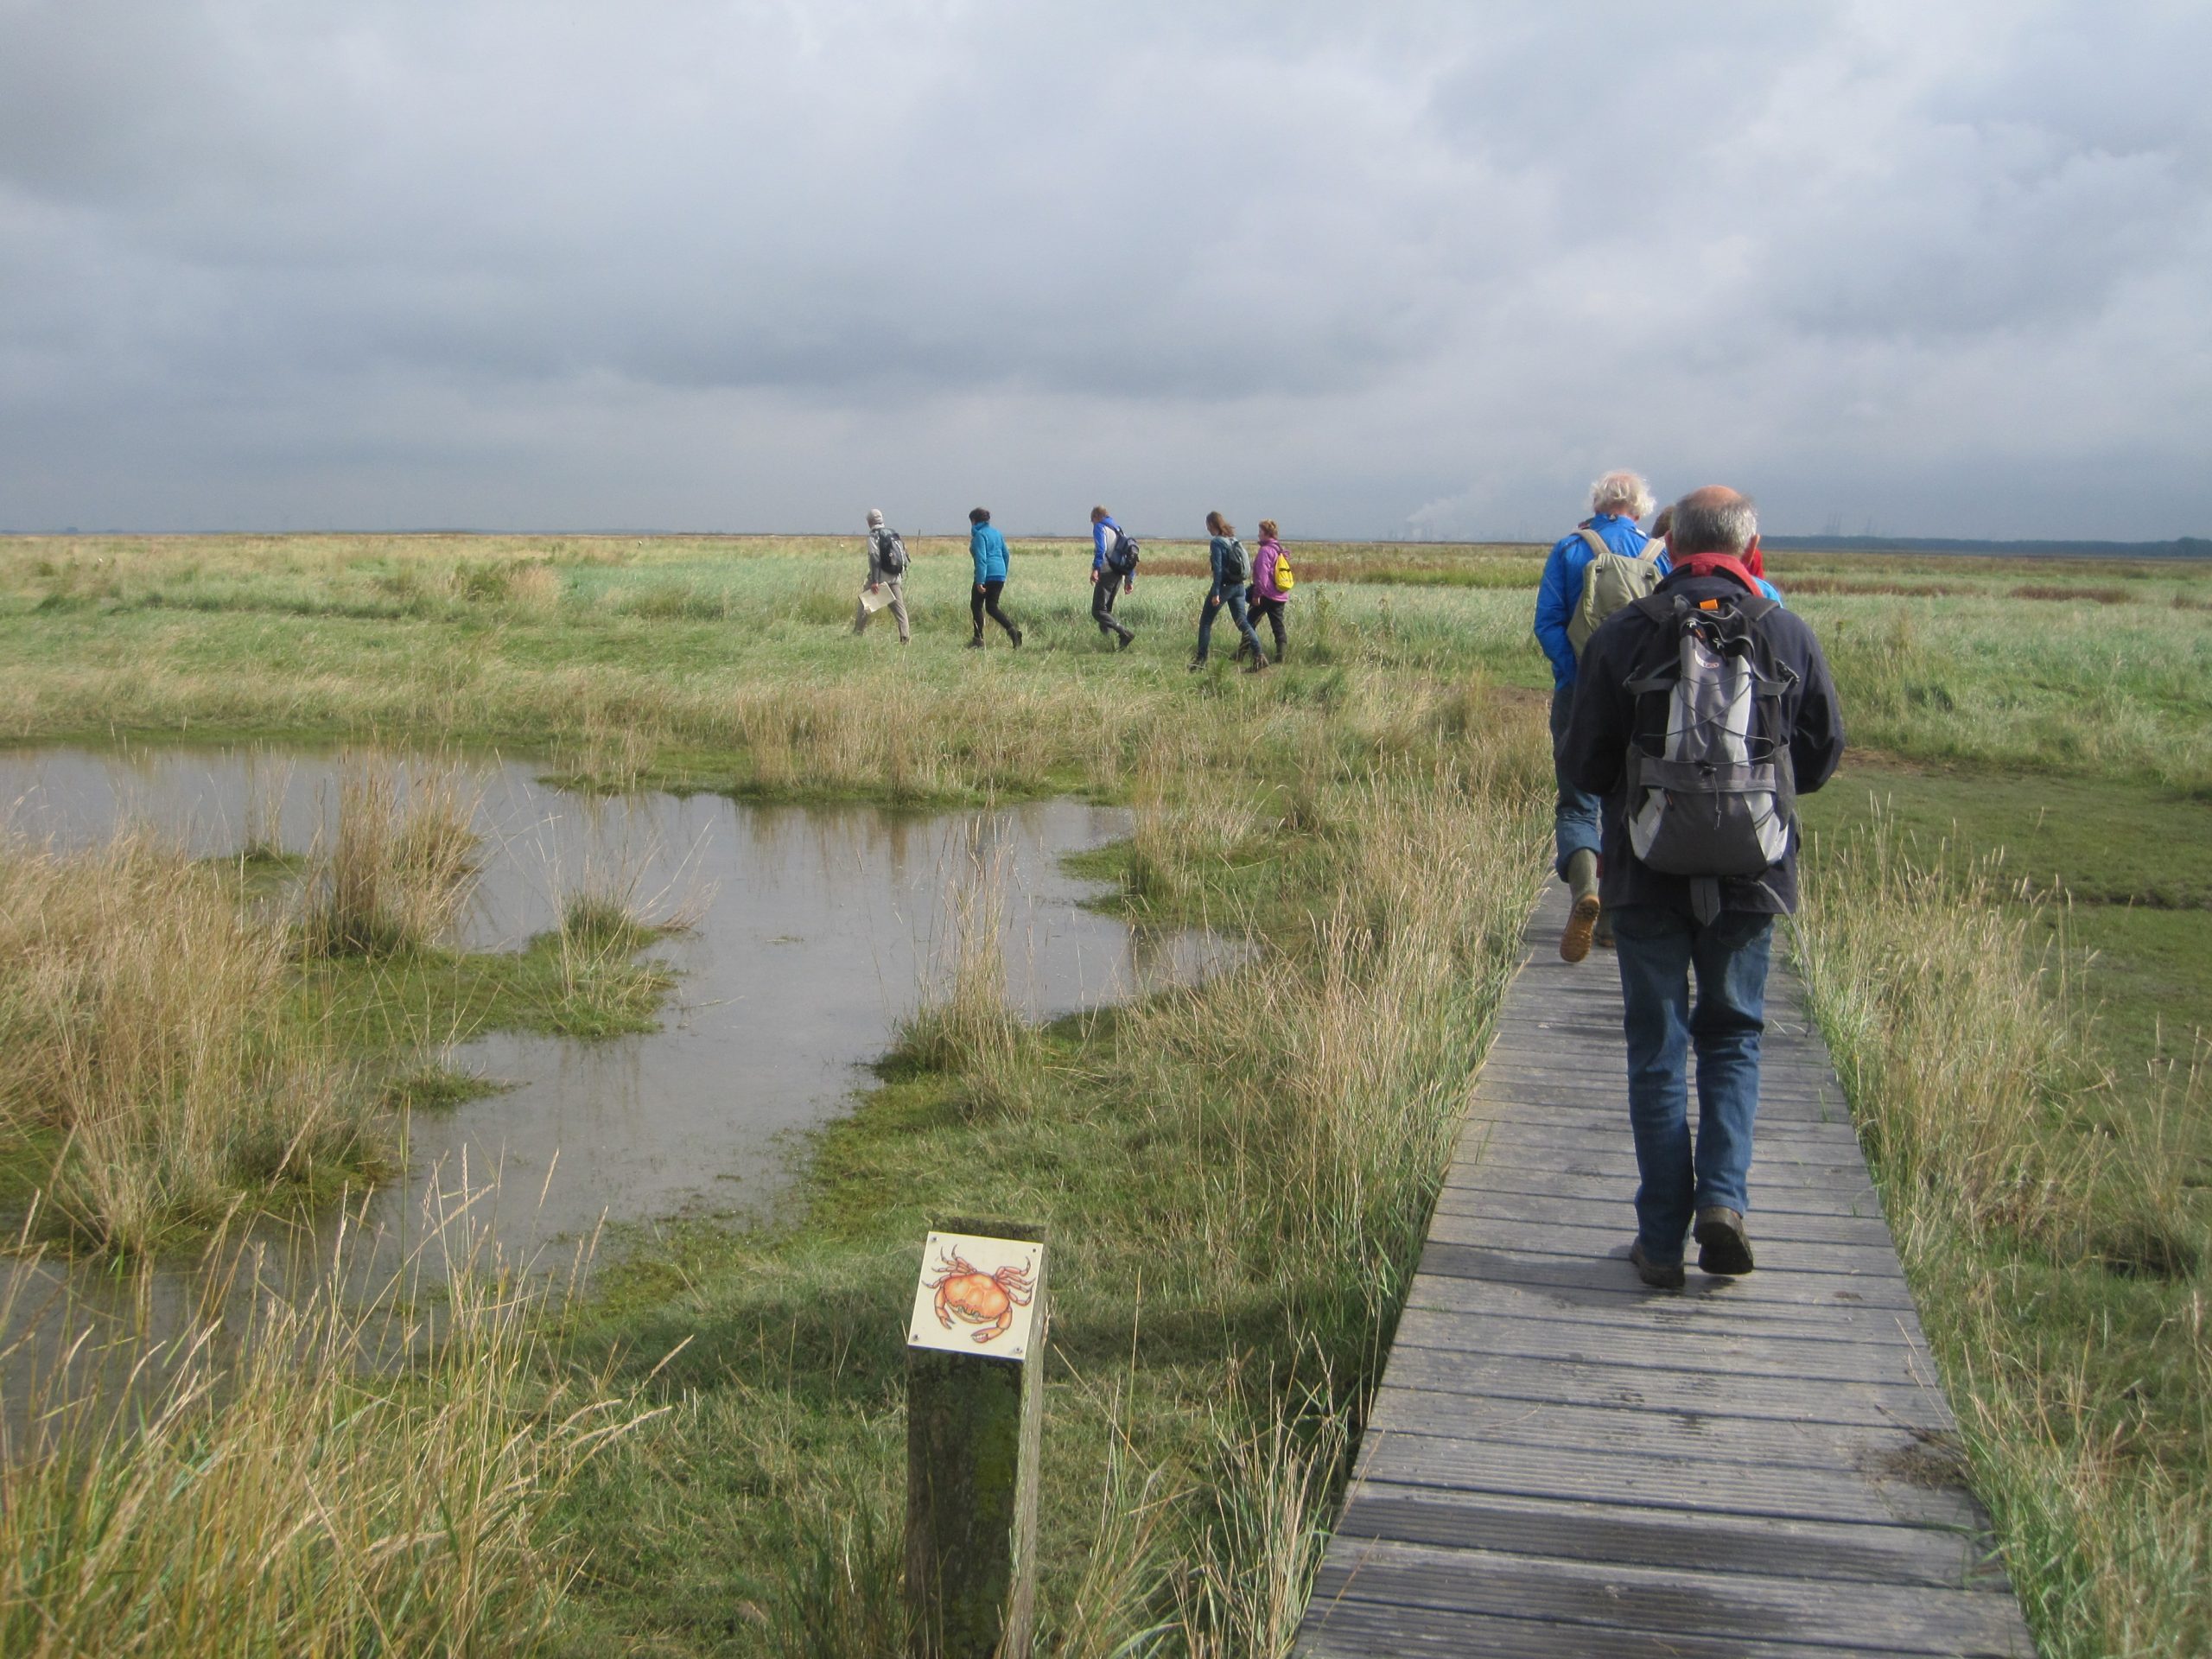 Wandelaars op een houten pad door een landschap met grassen en water. Het is een bewolkte dag.